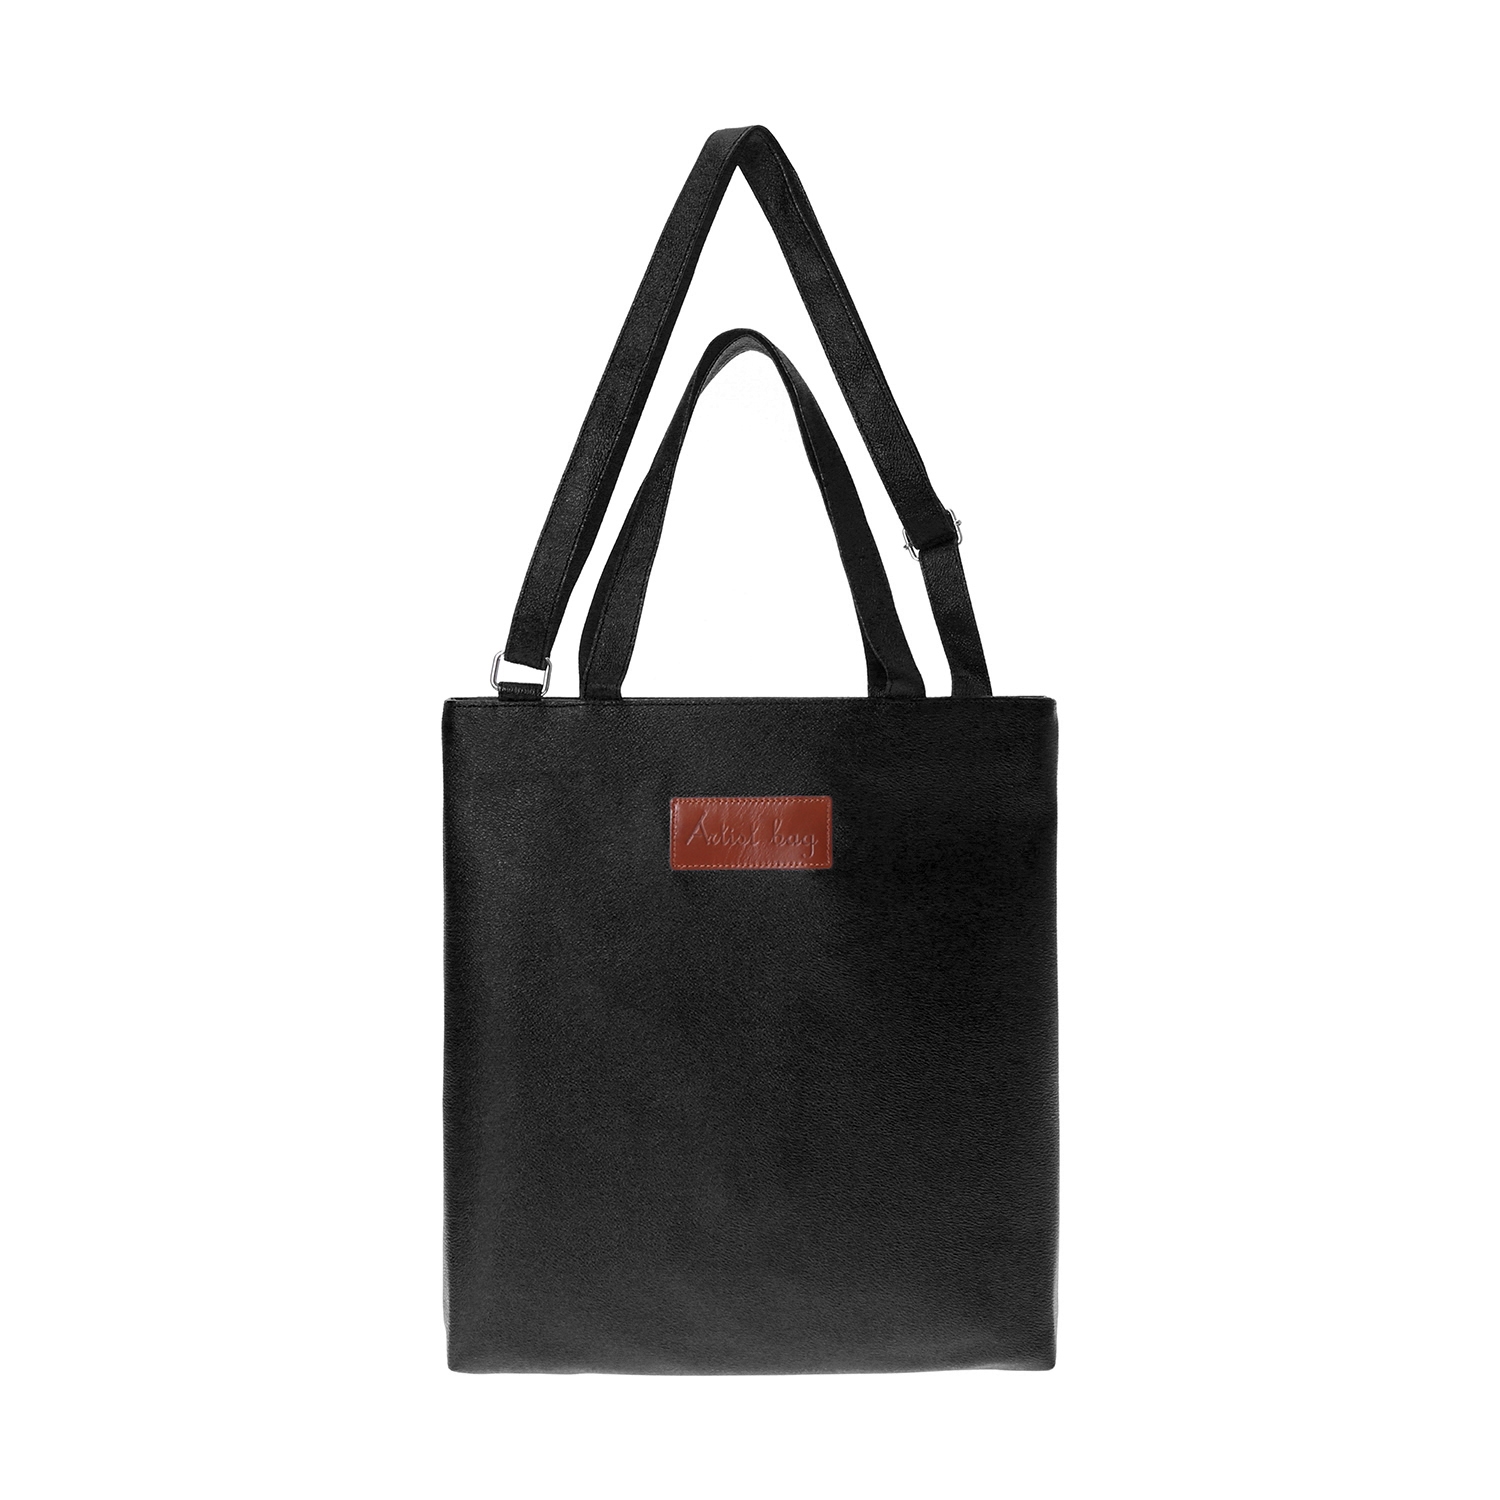 Artistbag modern cross bag